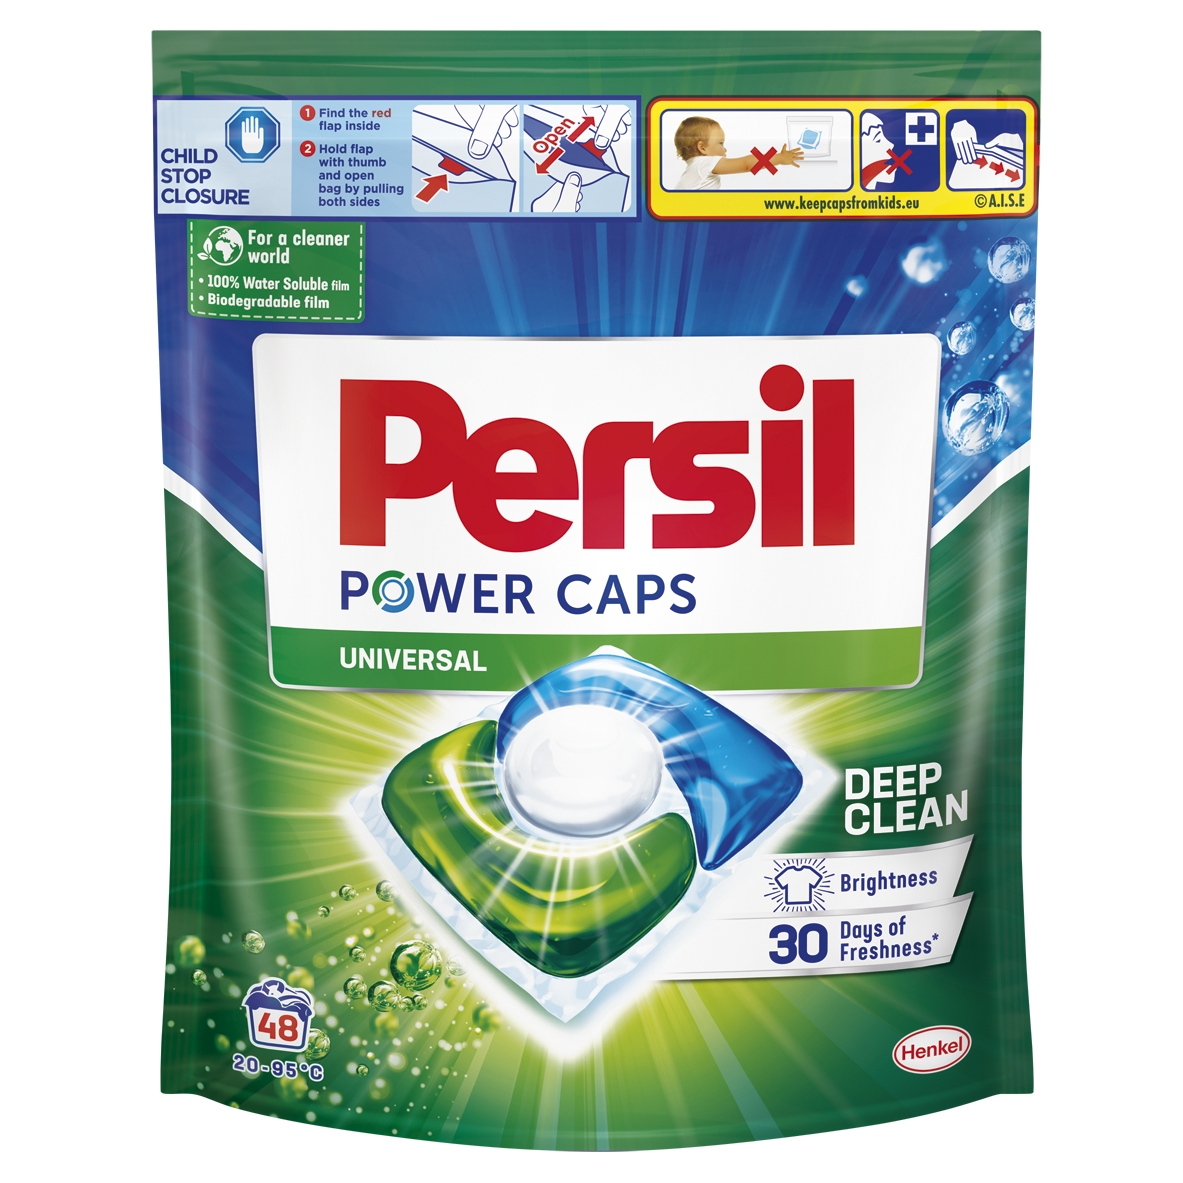 Капсулы для стирки Persil Power Caps Универсальные, 48 шт. - фото 1